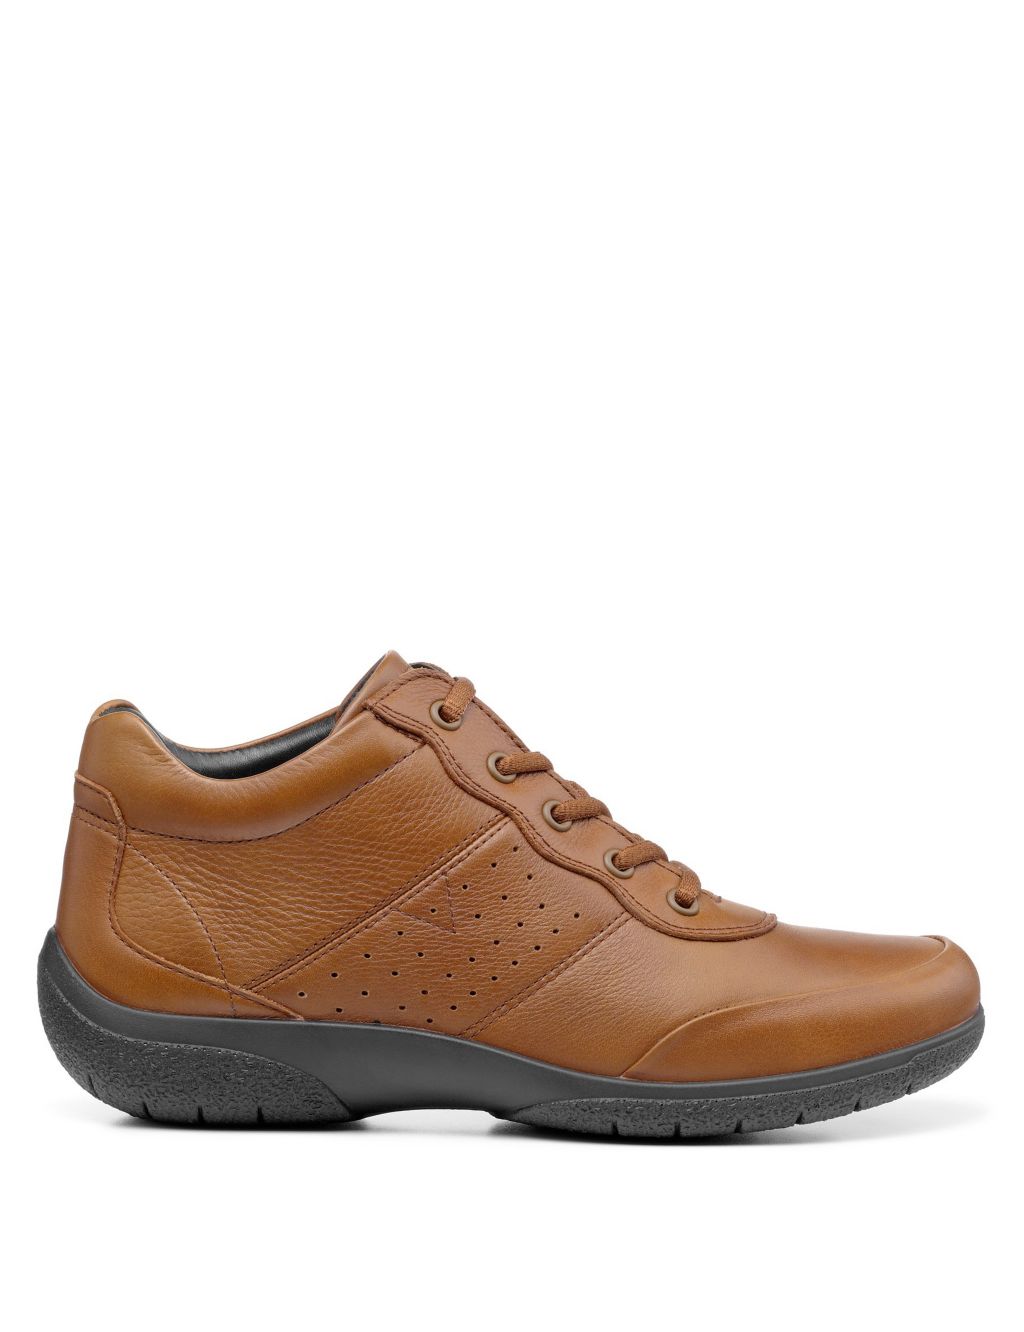 Ellery III Leather Flat Boots image 1